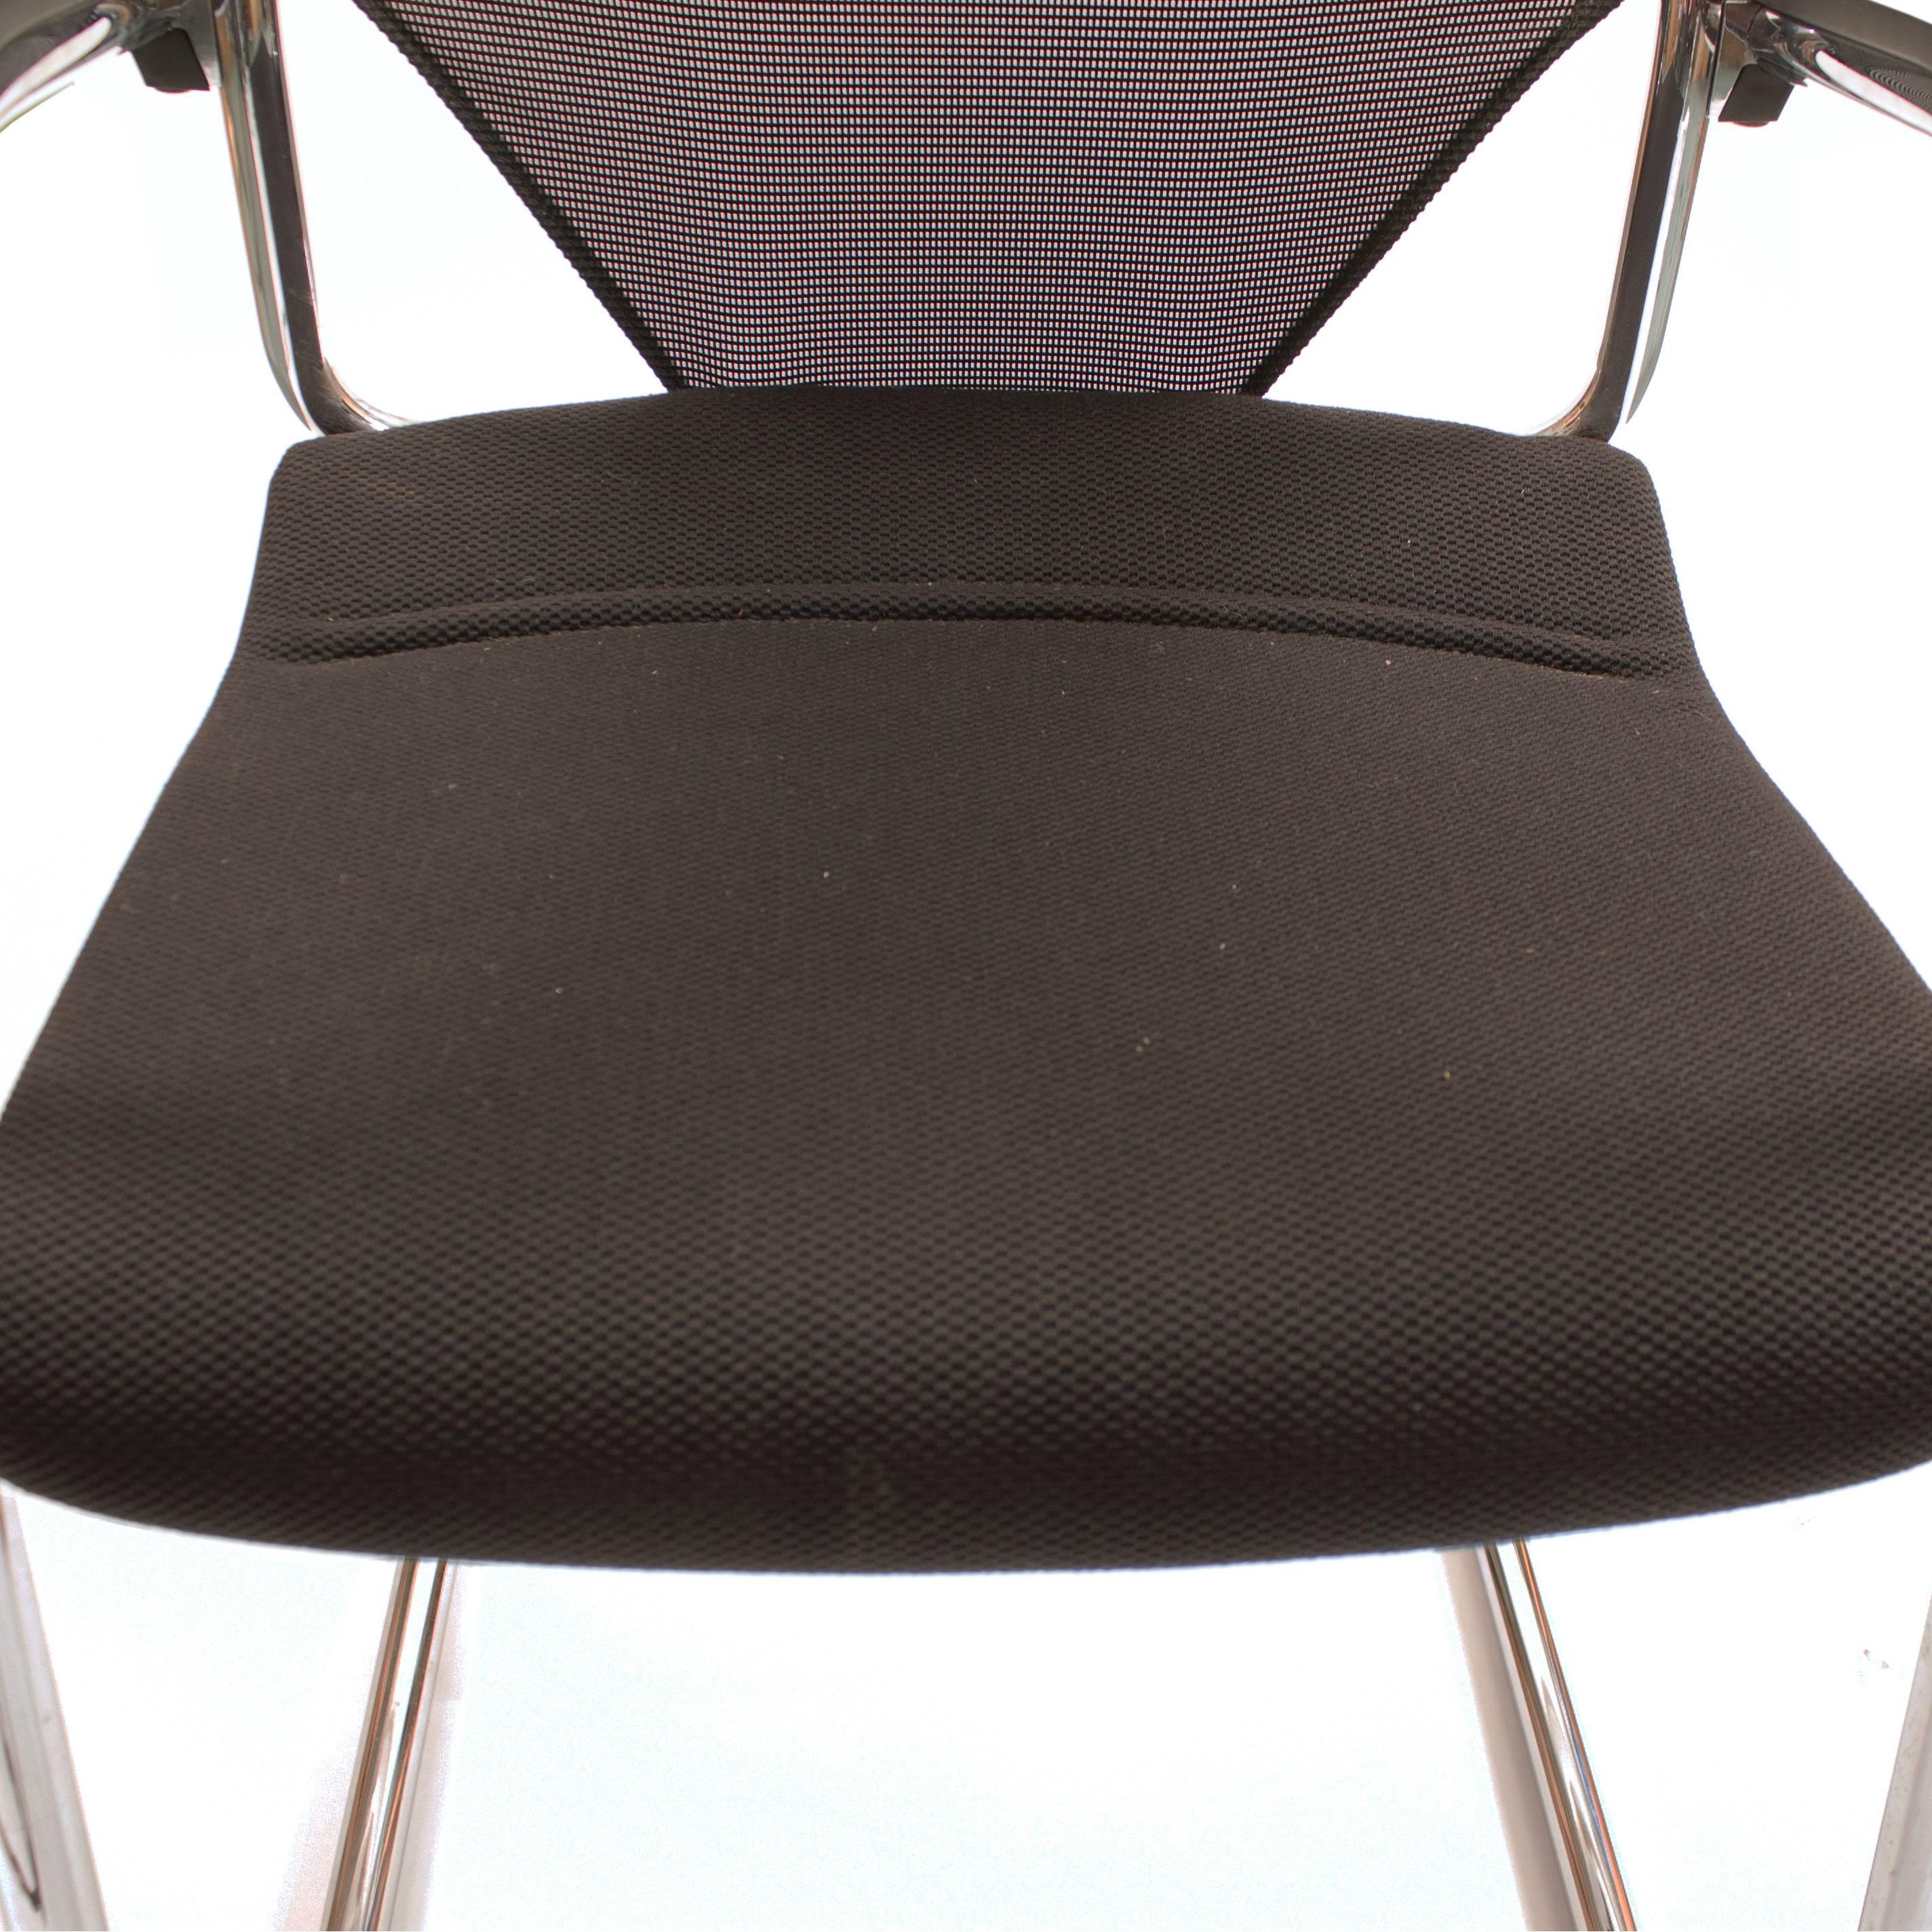 German Black Wilkhahn Modus Executive Cantilever Office Armchair For Sale